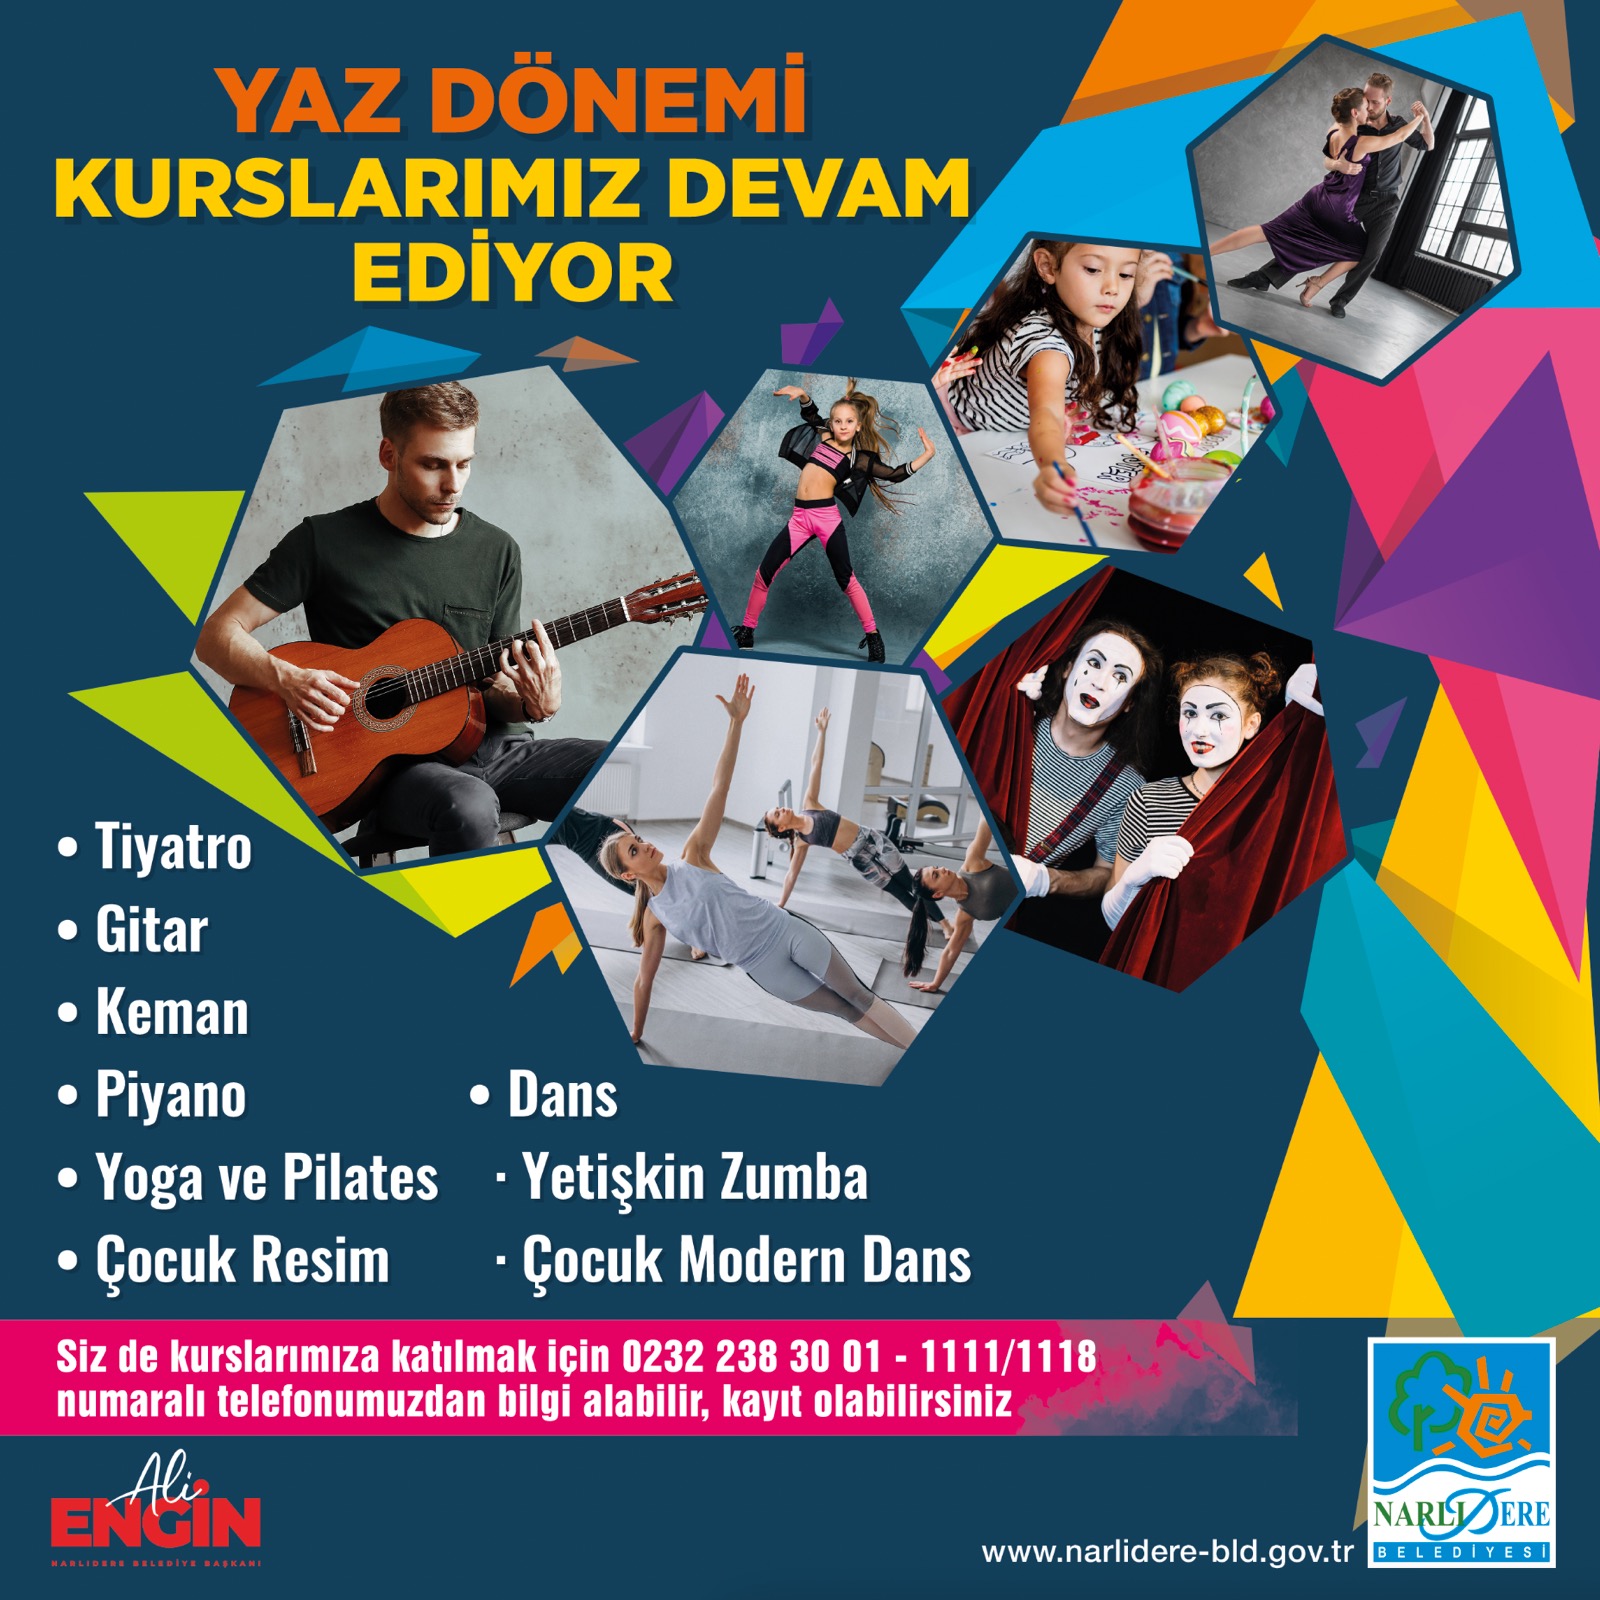 İzmir Narlıdere’nin kültür sanat kursları yazın da devam ediyor2